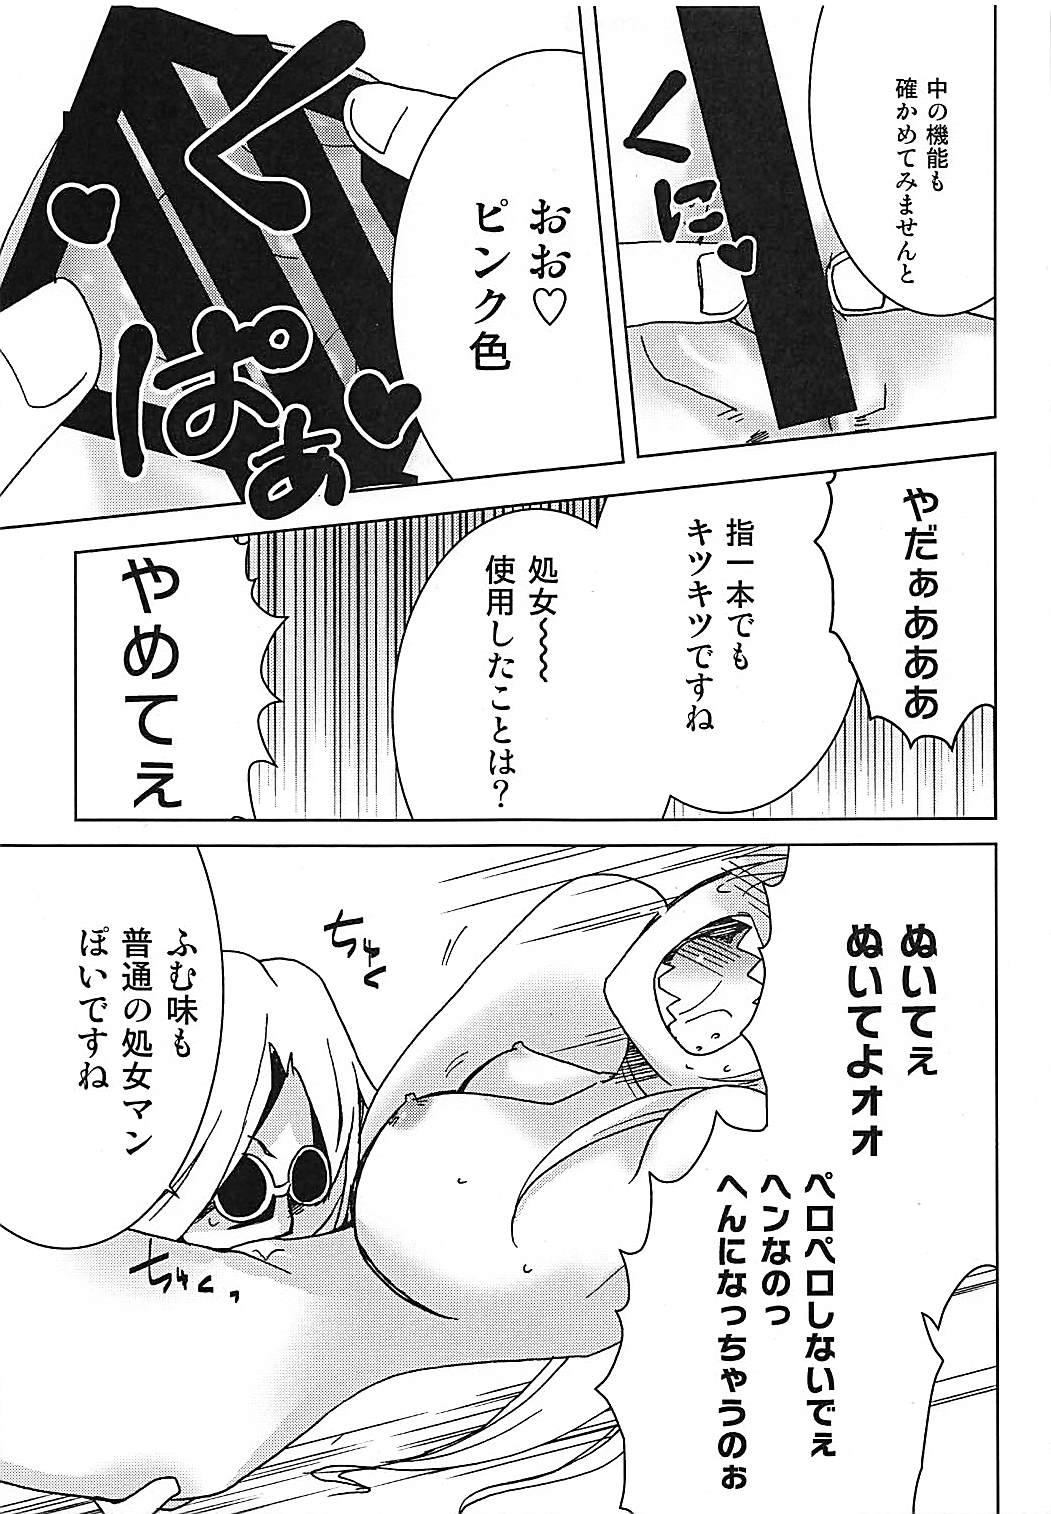 Scandal Meirei Mushi! - Ziga Cartoon - Page 12